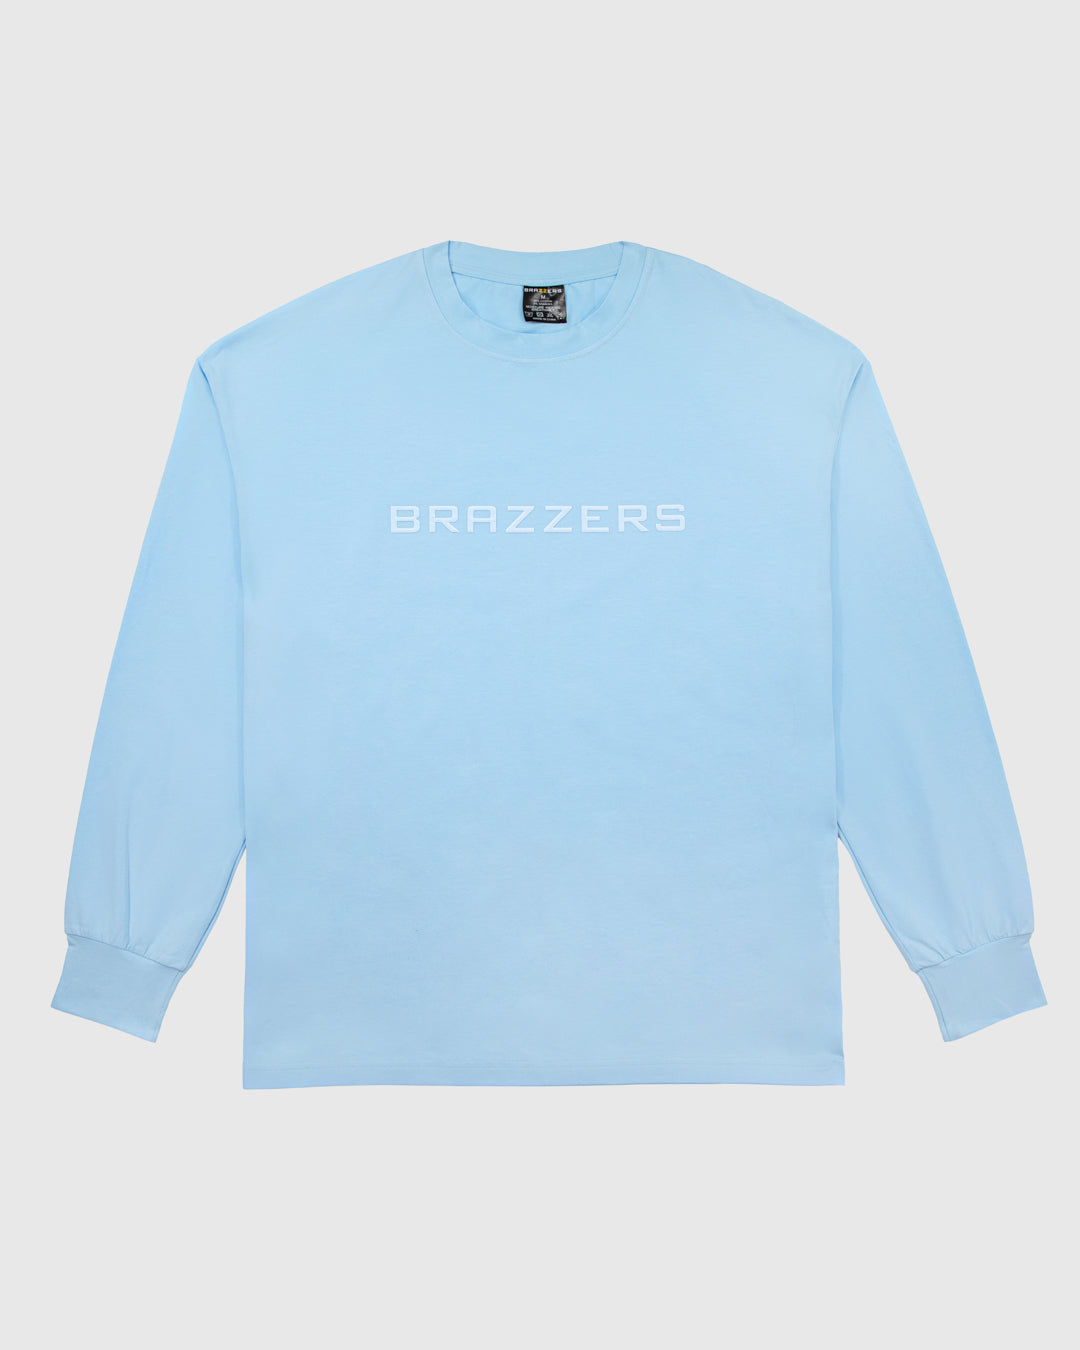 brazzers-longsleeve-tee_front_blue